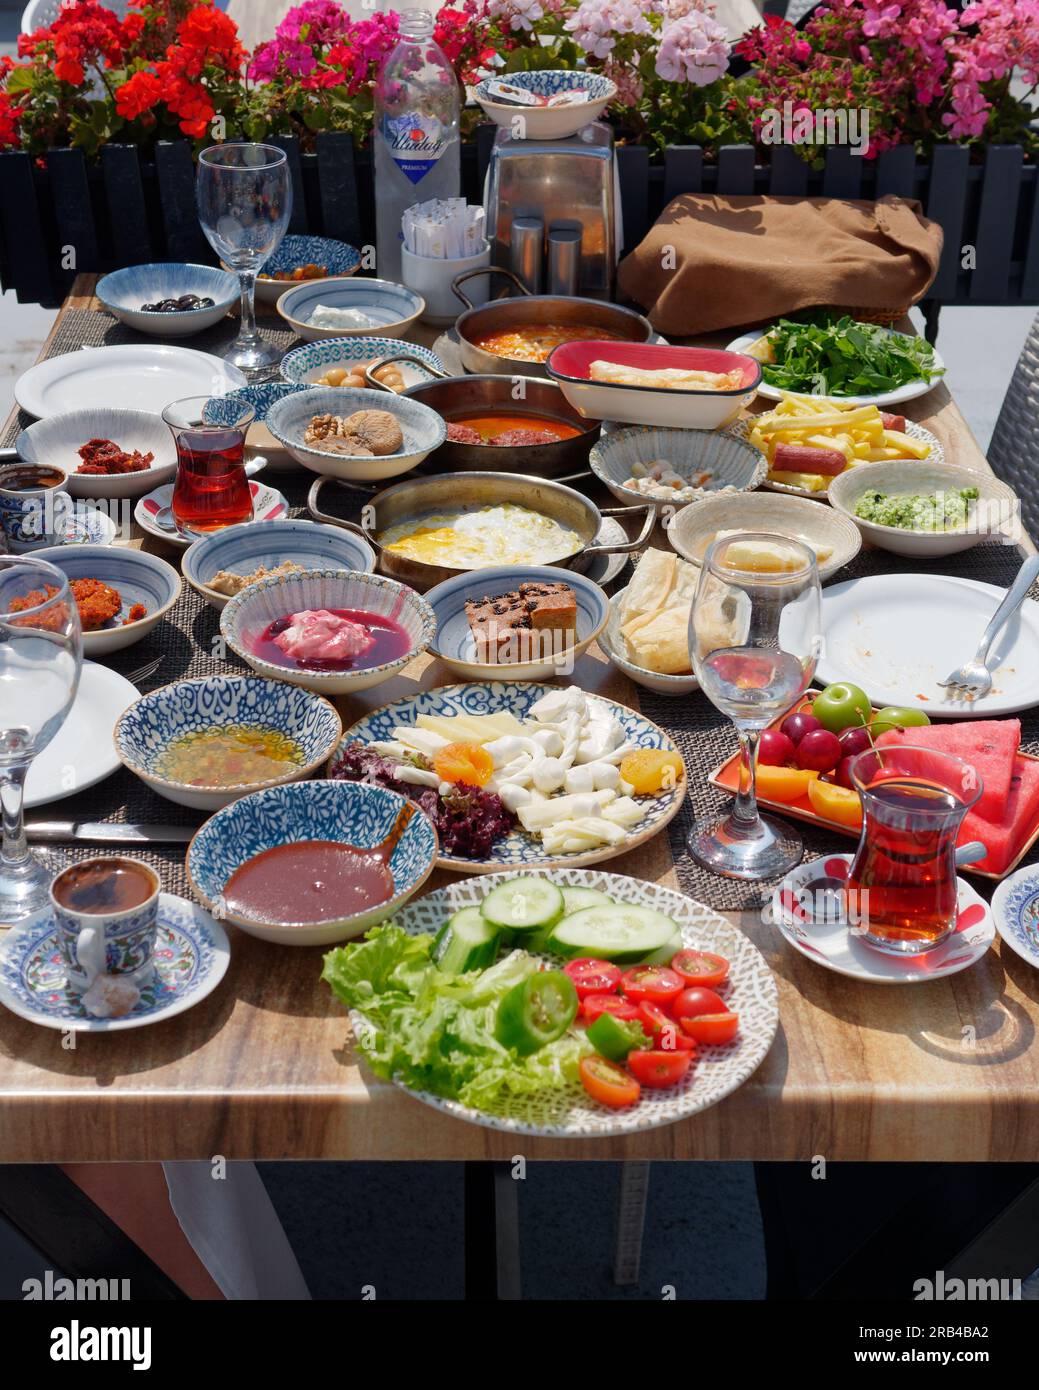 Platte mit Speisen zum Frühstück oder Brunch einschließlich türkischem Tee im Seven Hills Restaurant, Istanbul, Türkei Stockfoto